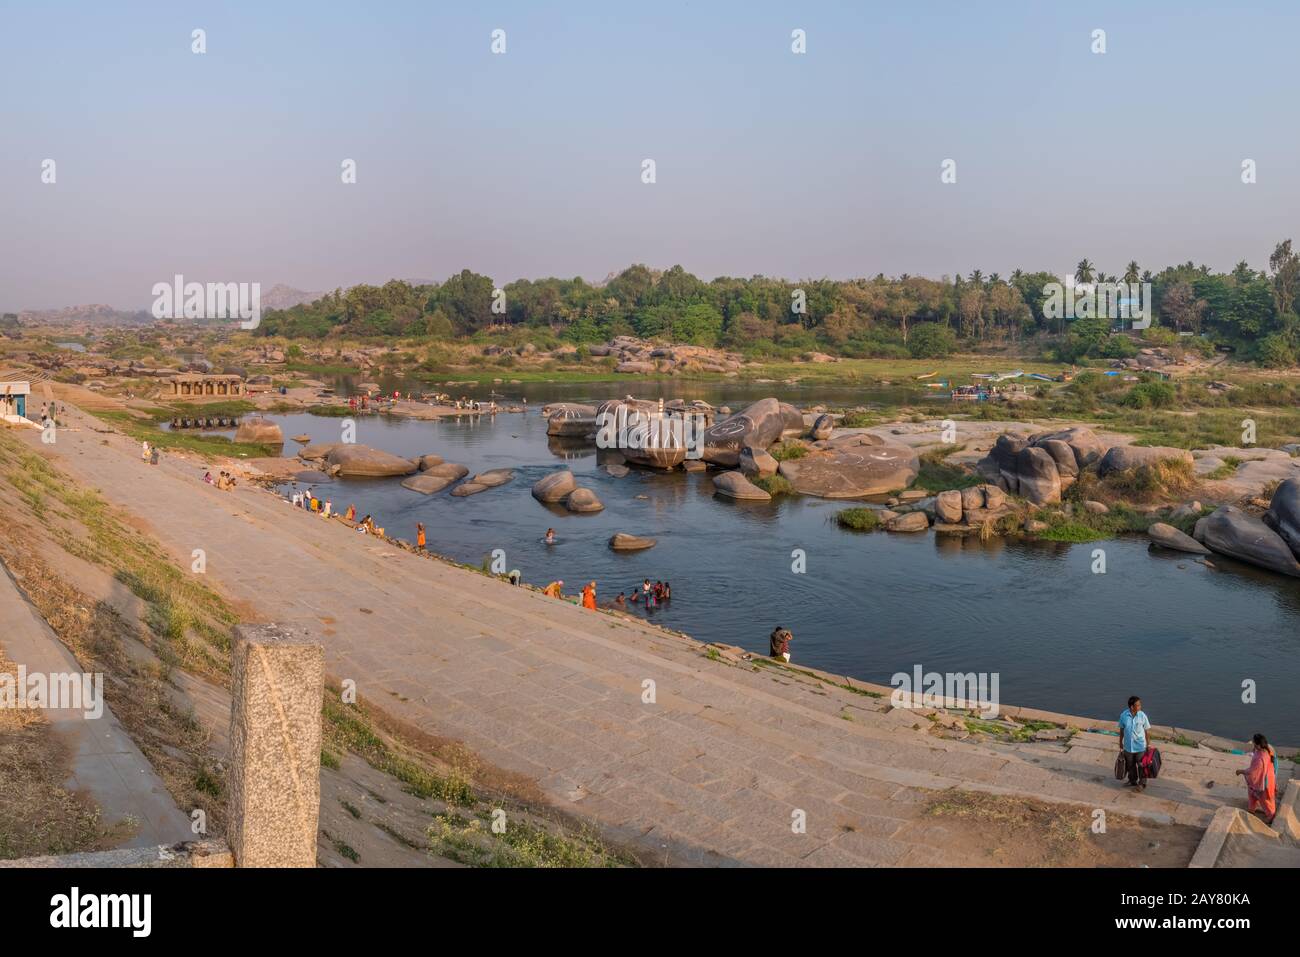 Hampi, Indien - 06. März 2018: Fluss am Nordrand der antiken Stadt Hampi, am Nachmittag mit einigen Menschen an den Flussrändern eingenommen Stockfoto